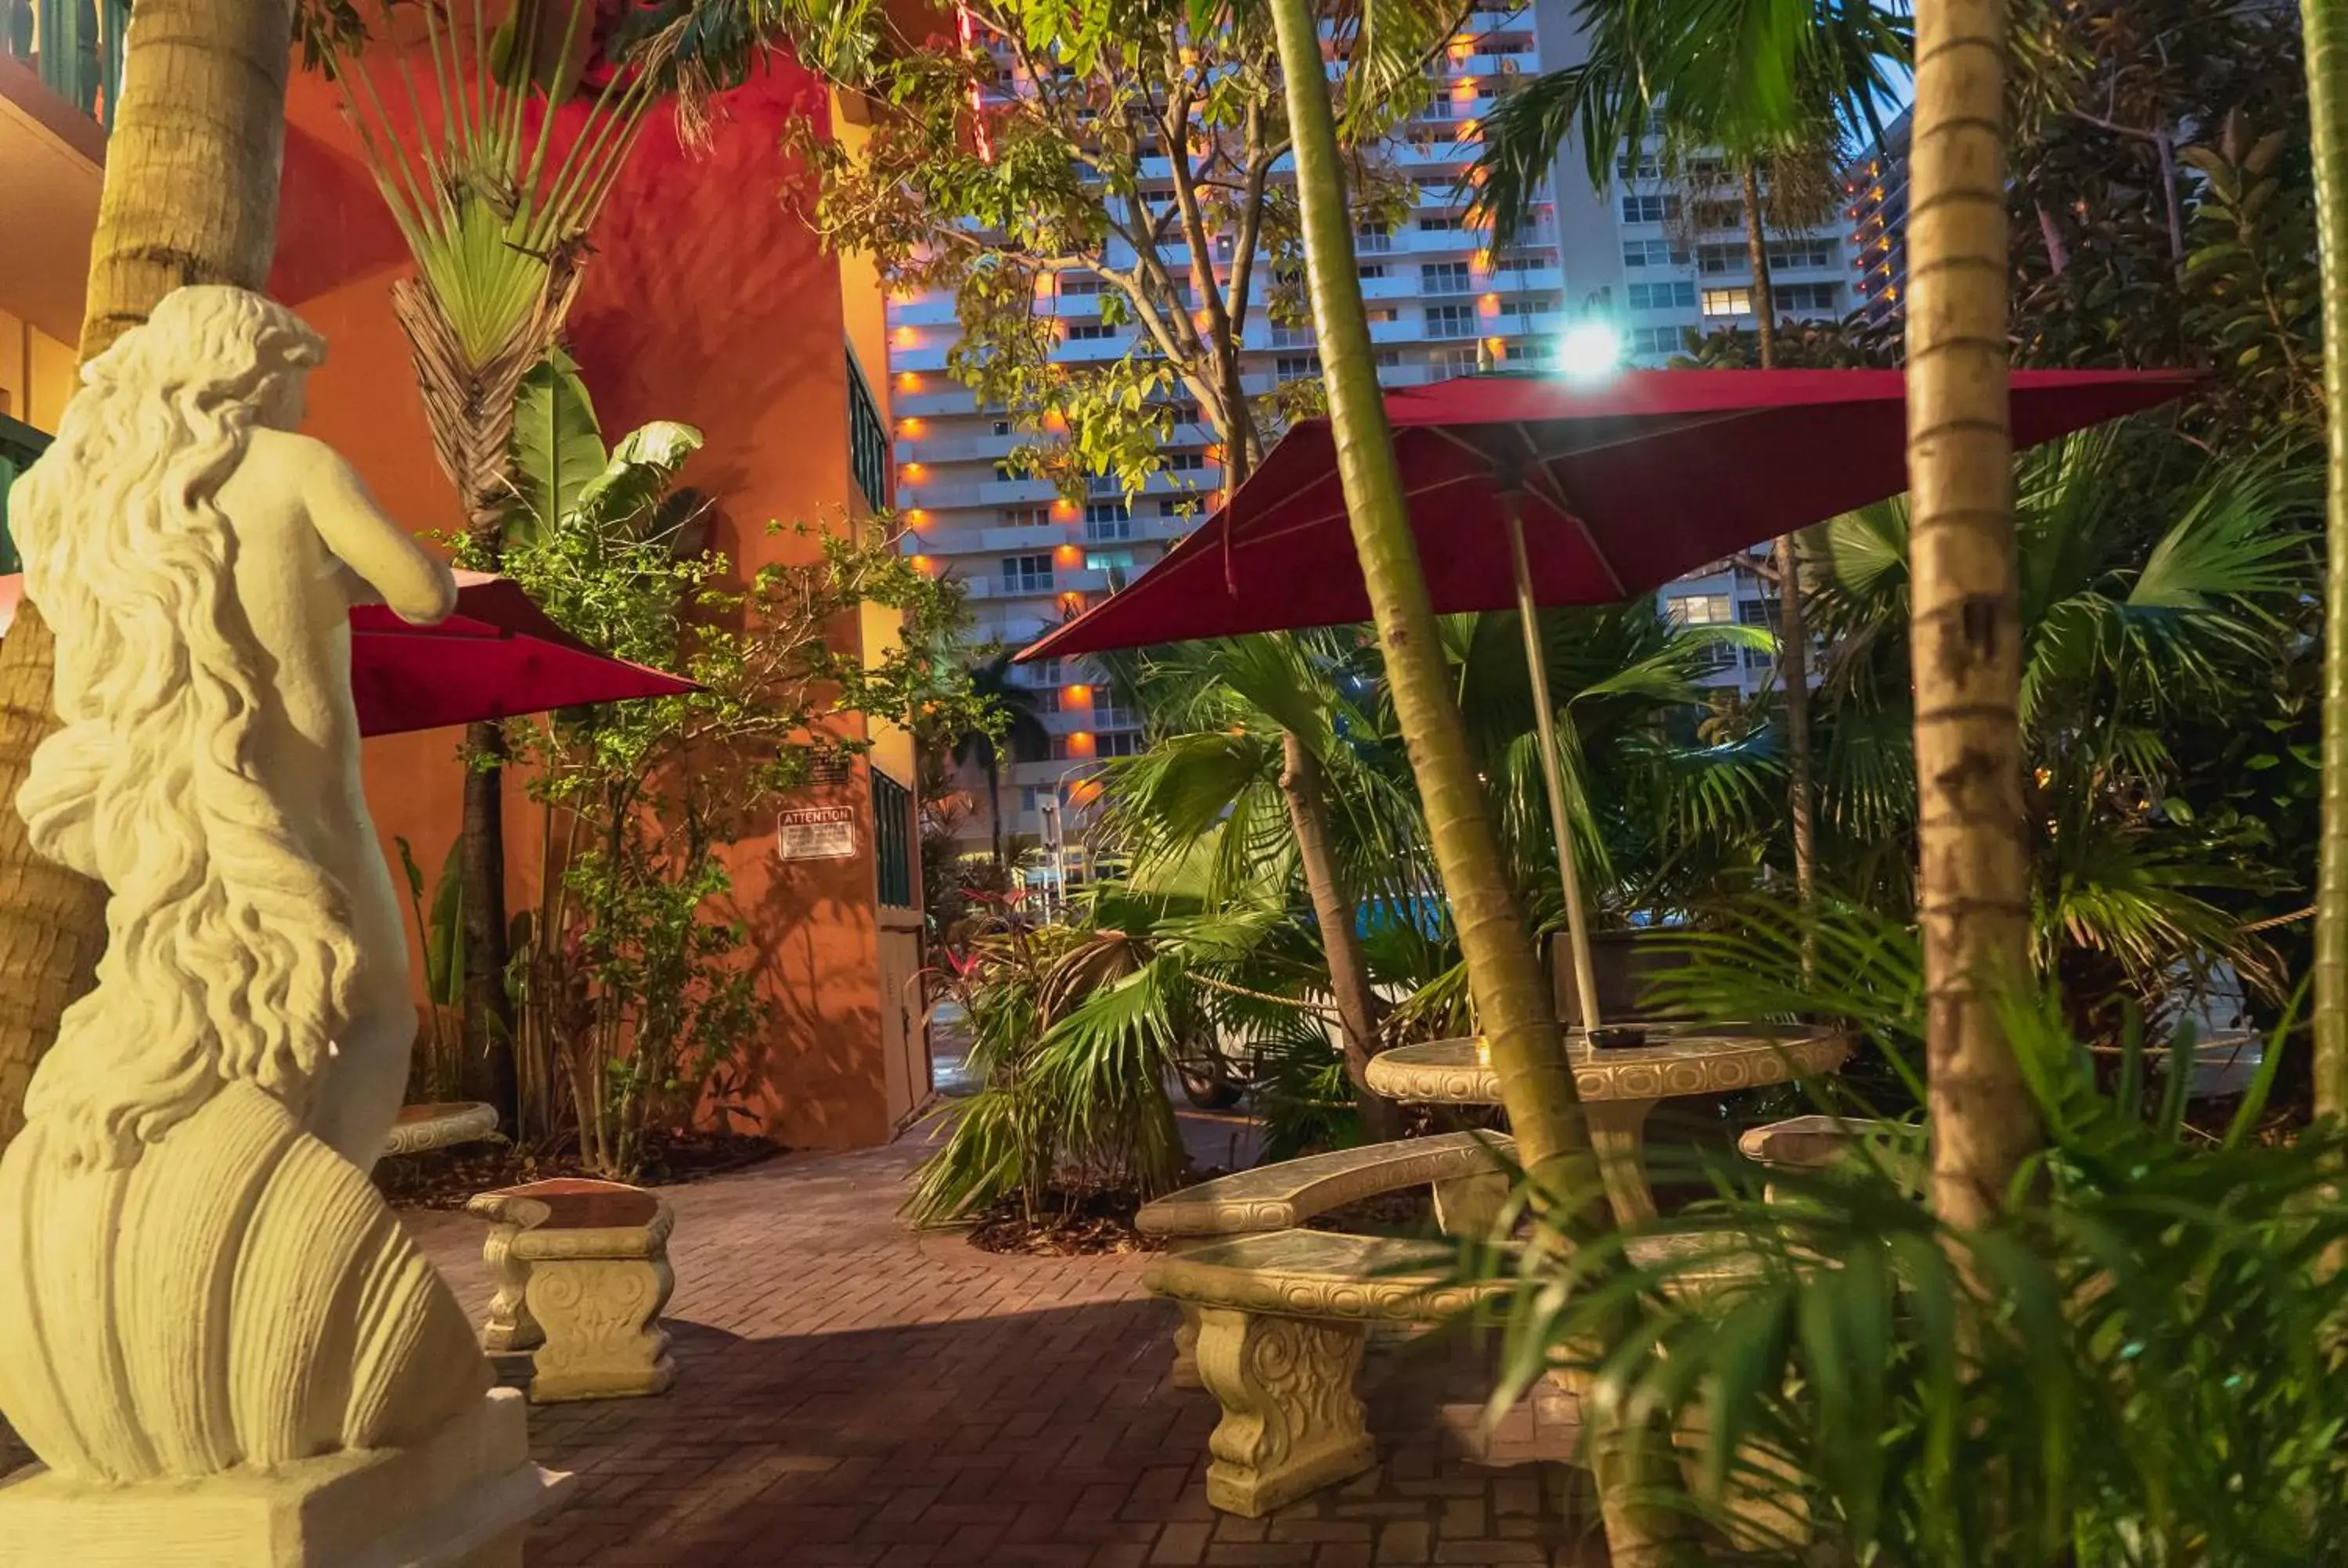 Balcony/Terrace in Ft. Lauderdale Beach Resort Hotel